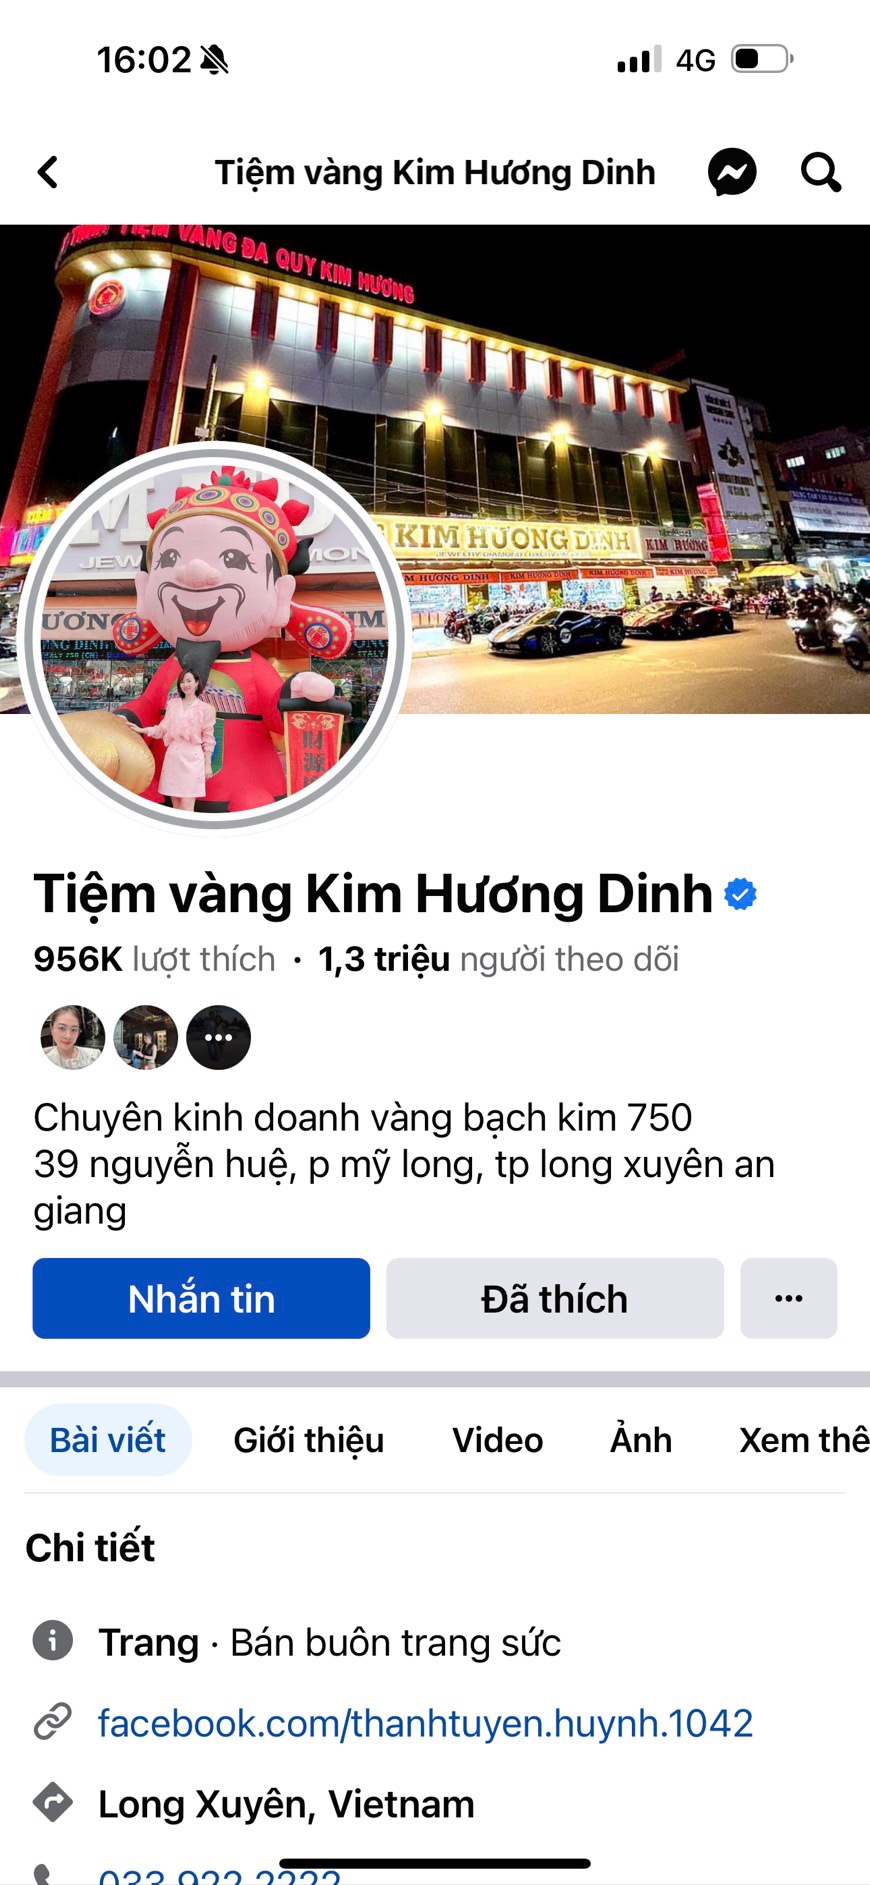 Tài khoản Facebook gắn tick xanh “Tiệm vàng Kim Hương Dinh” với 956.000 lượt thích, 1,3 triệu người theo dõi